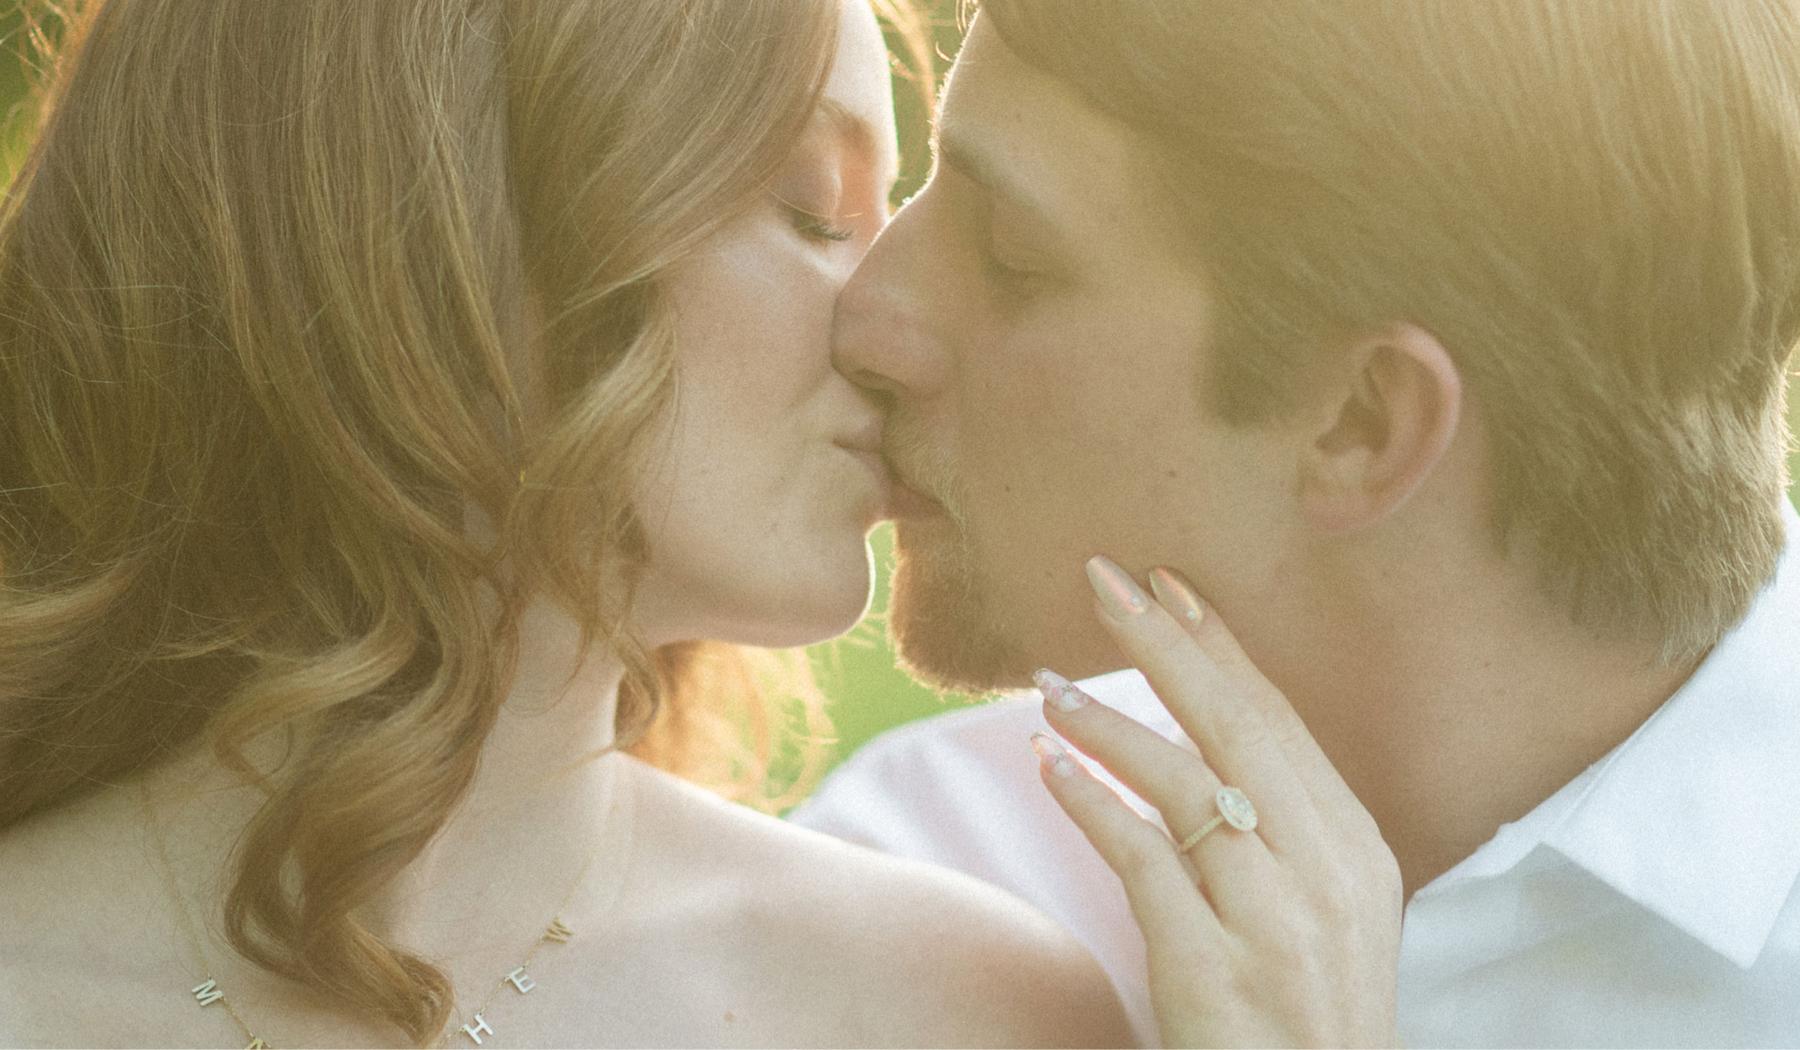 The Wedding Website of Kelsey Benjamin and Matthew Dippold